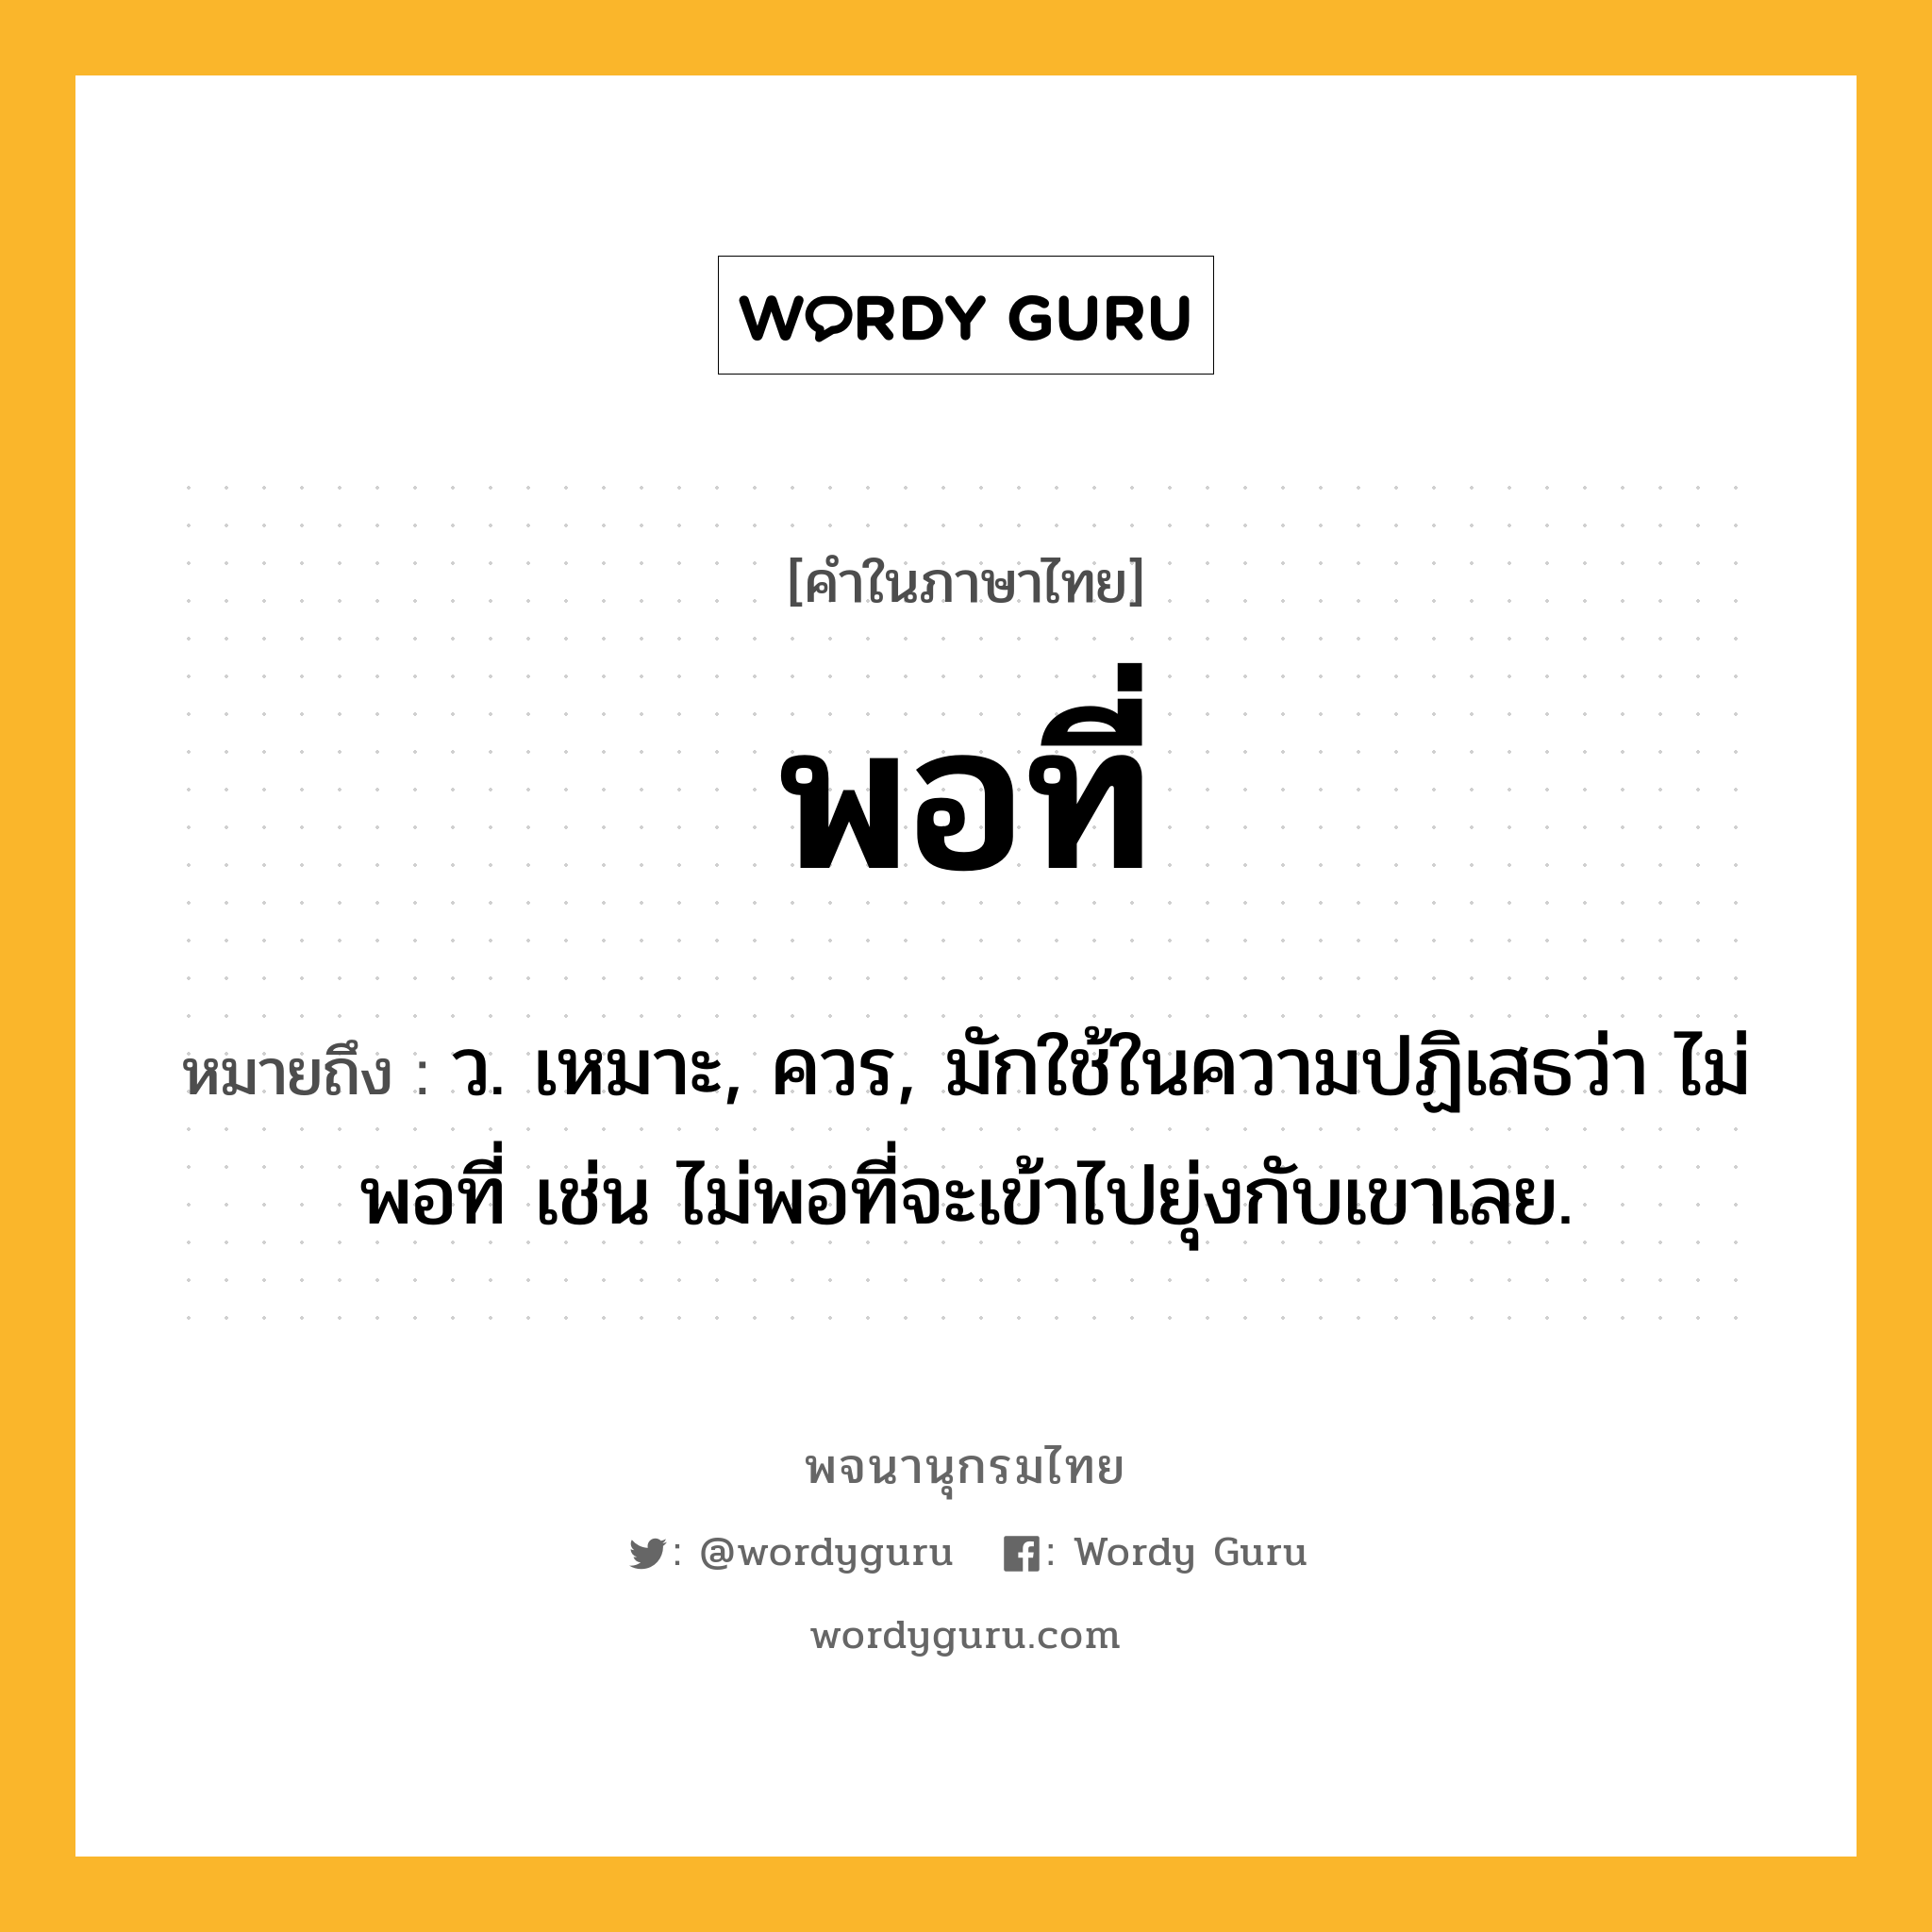 พอที่ หมายถึงอะไร?, คำในภาษาไทย พอที่ หมายถึง ว. เหมาะ, ควร, มักใช้ในความปฏิเสธว่า ไม่พอที่ เช่น ไม่พอที่จะเข้าไปยุ่งกับเขาเลย.